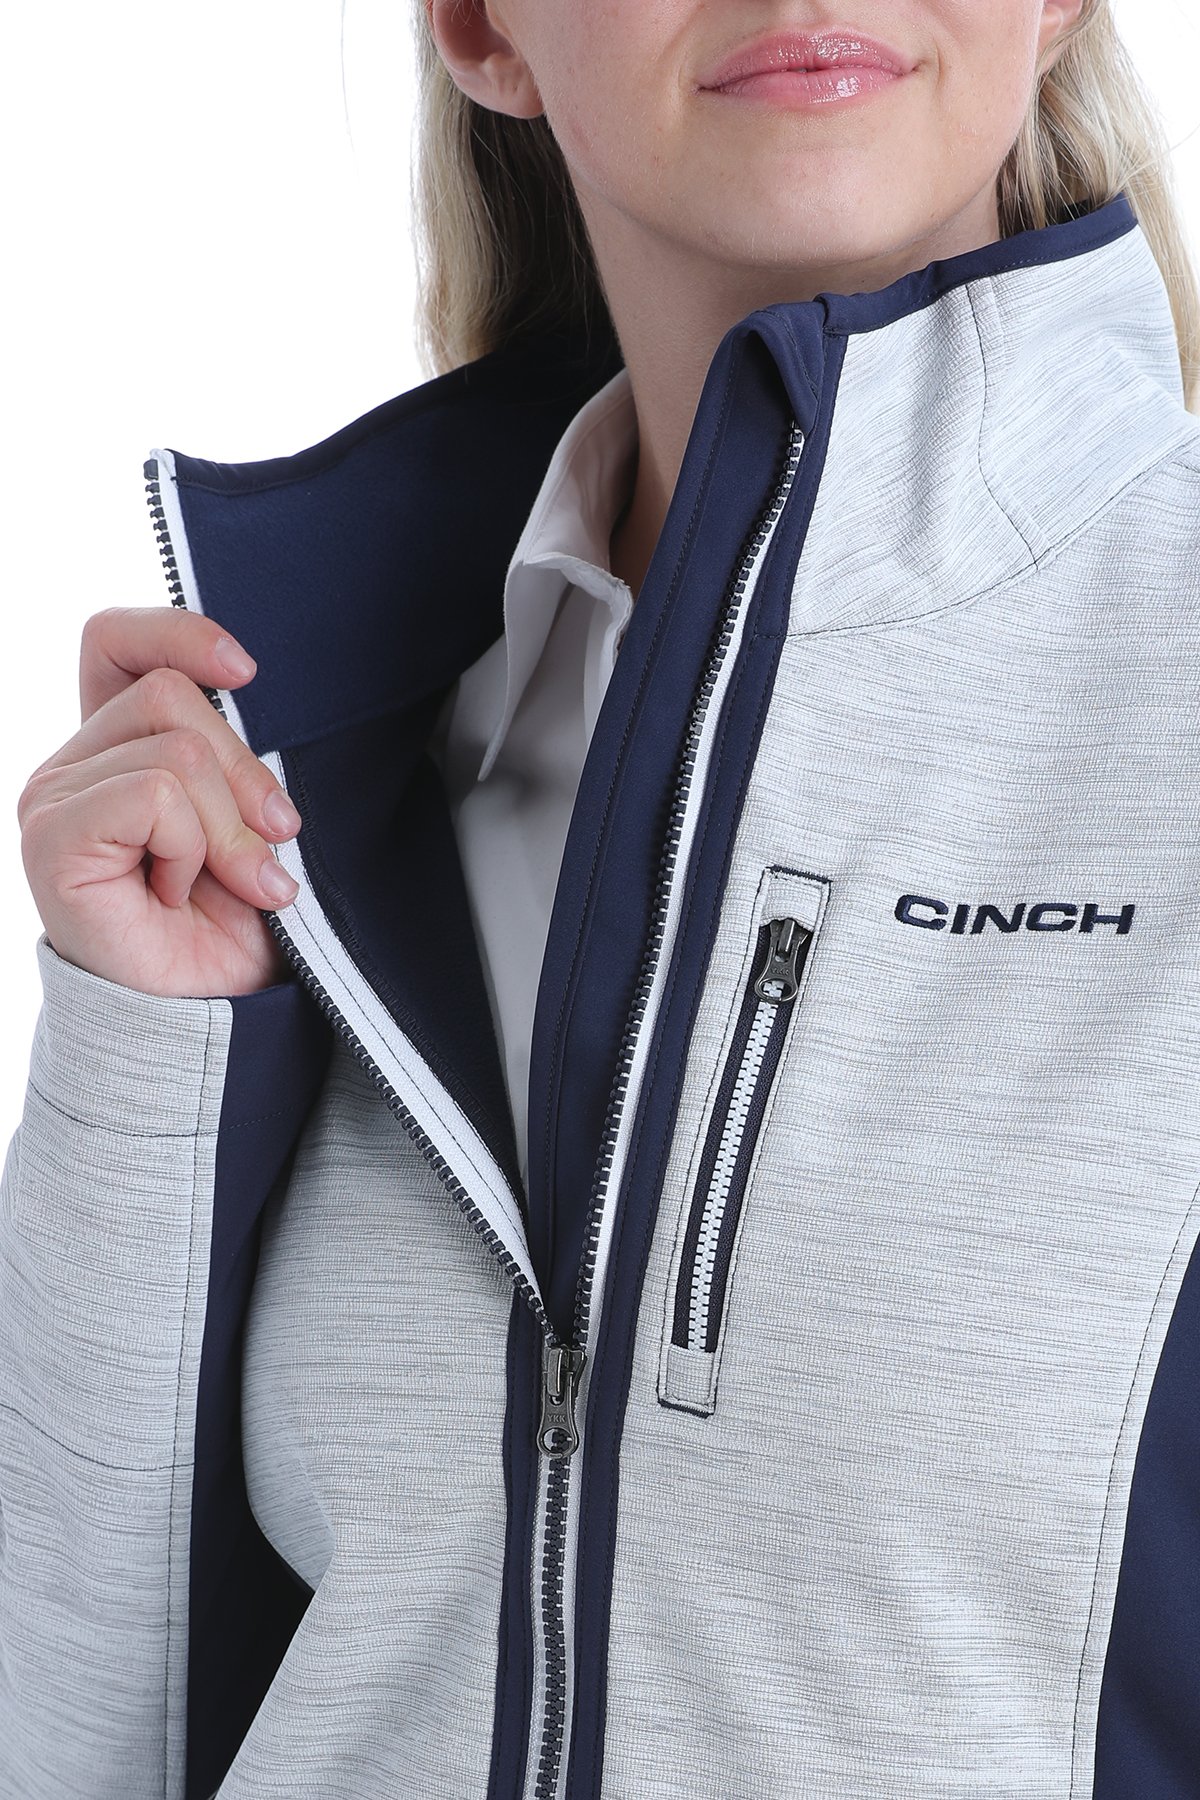 Cinch Wool Rancher Jacket – Harris Leather & Silverworks